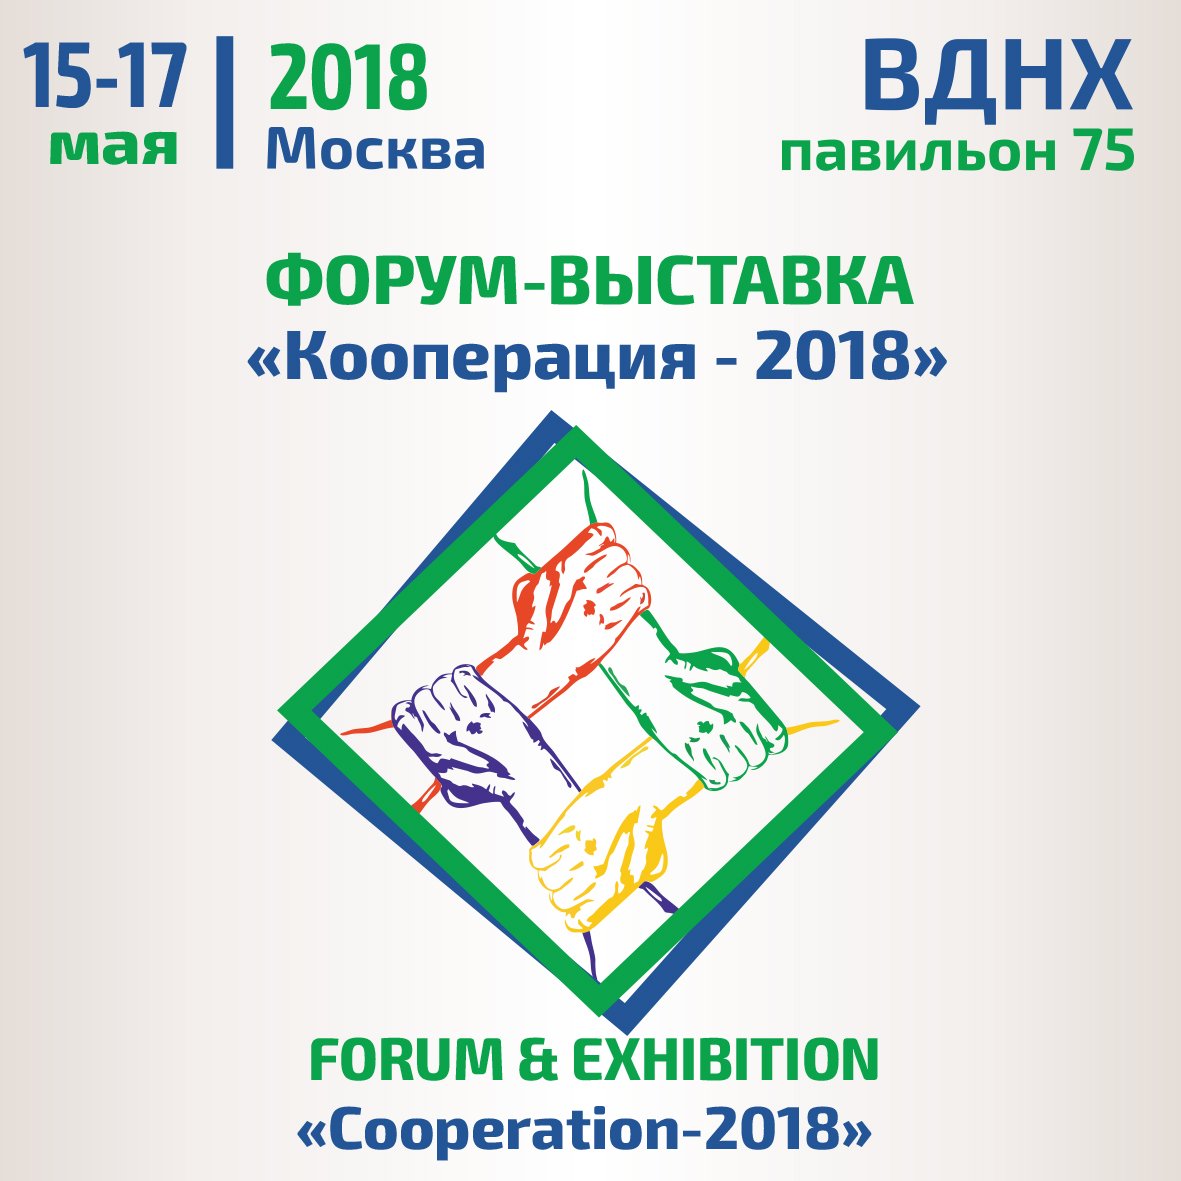 15-17 мая в Москве пройдет форум и выставка "Кооперация-2018"